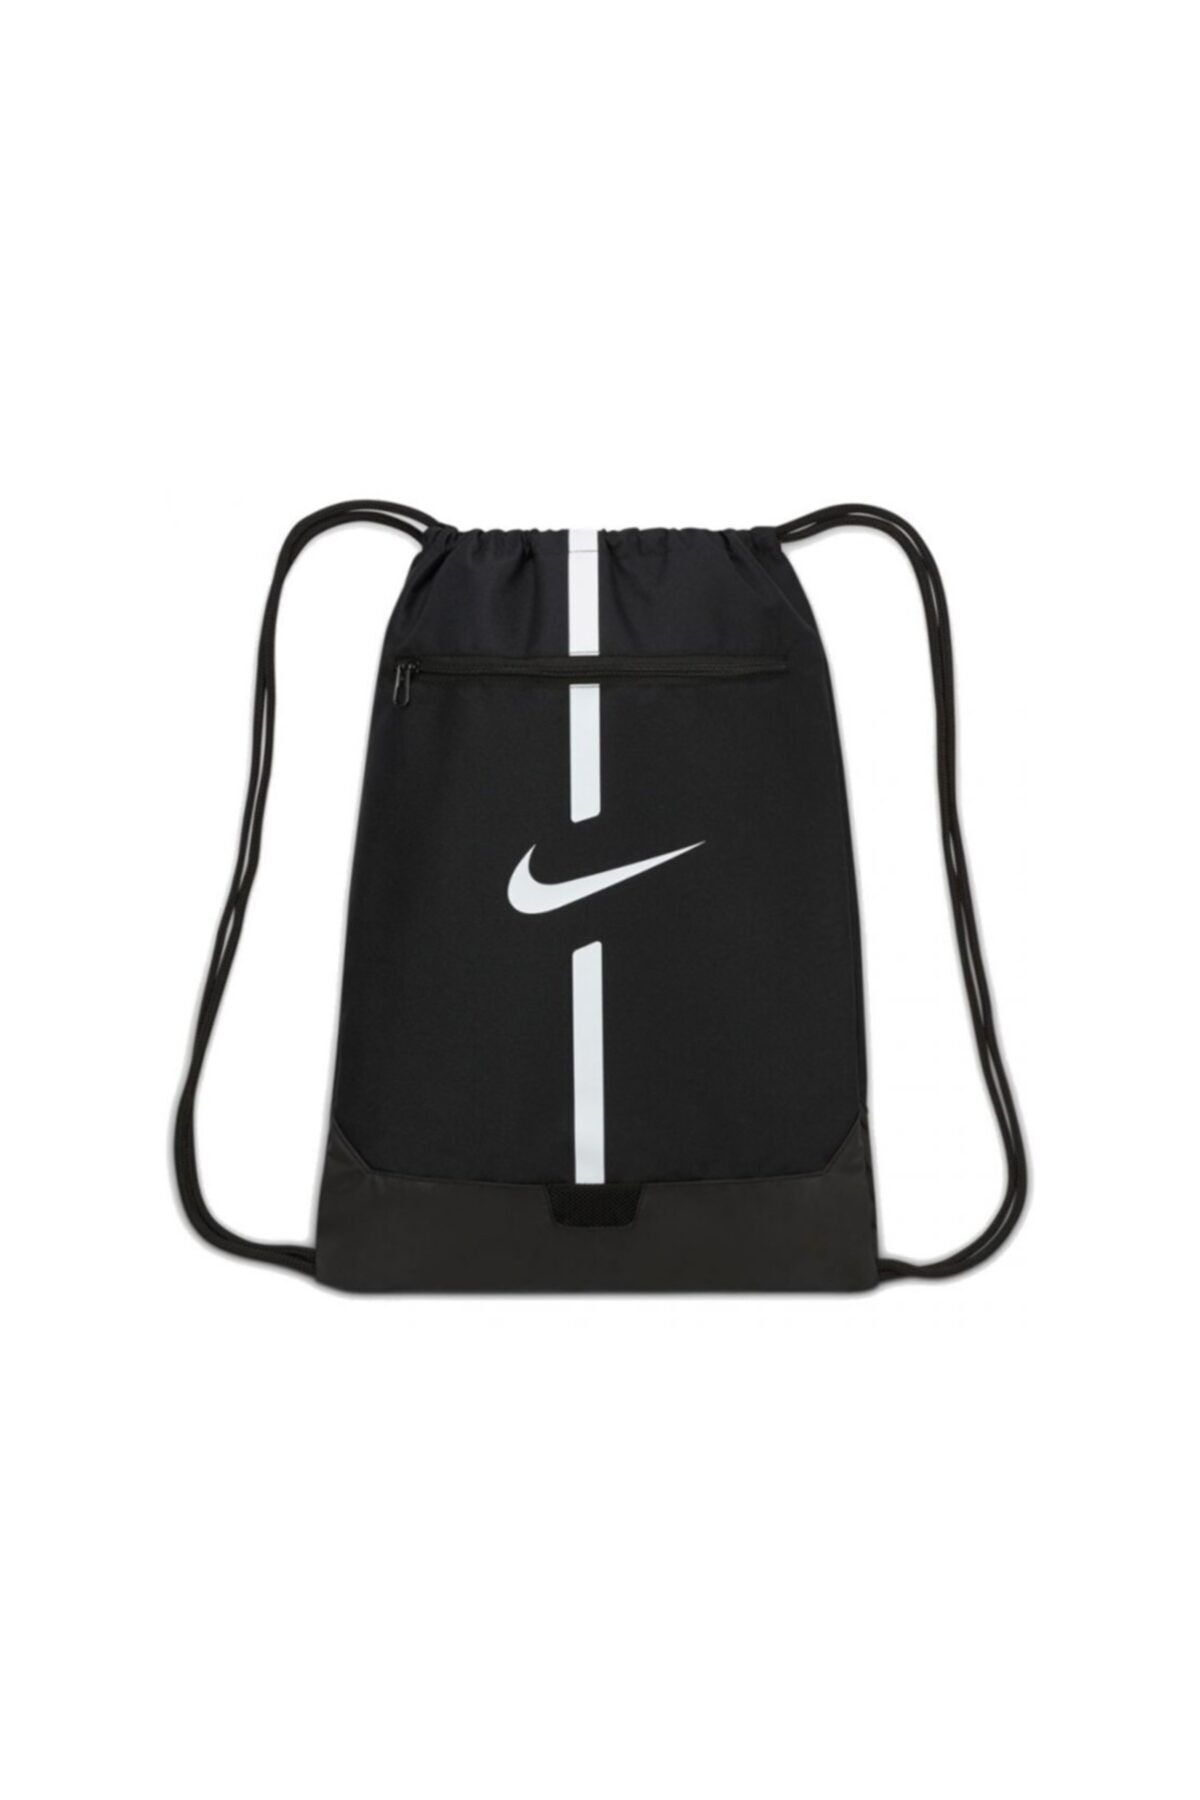 Nike Brasilia JDI Unisex Mini Siyah Sırt Çantası Kadin Çanta & Cüzdan  4426894